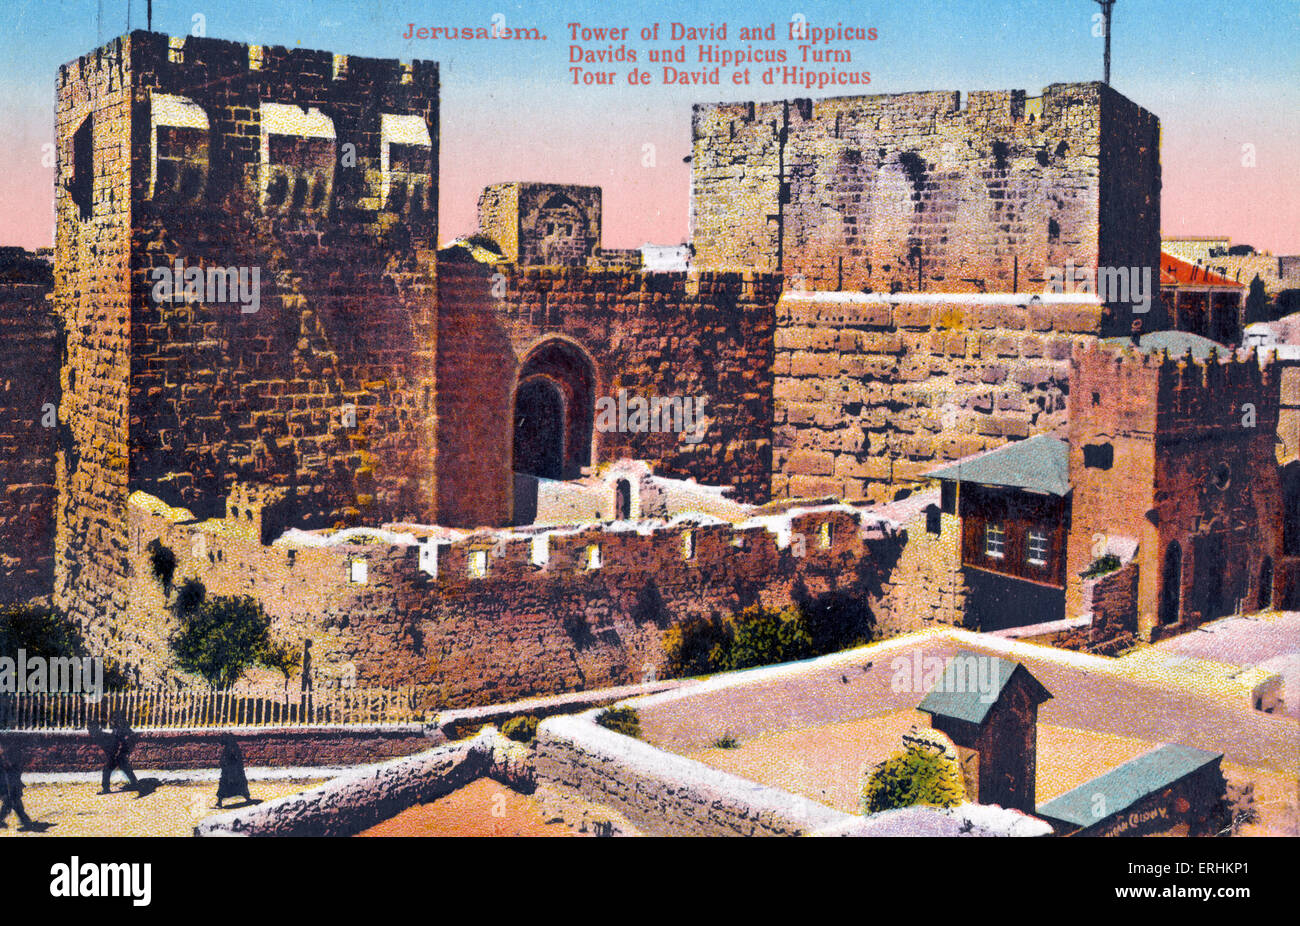 Turm von David und der Hippicus in der Altstadt von Jerusalem. Davids Turm / Davids Burg.  Zitadelle (Festung). Anfang 1900 Stockfoto